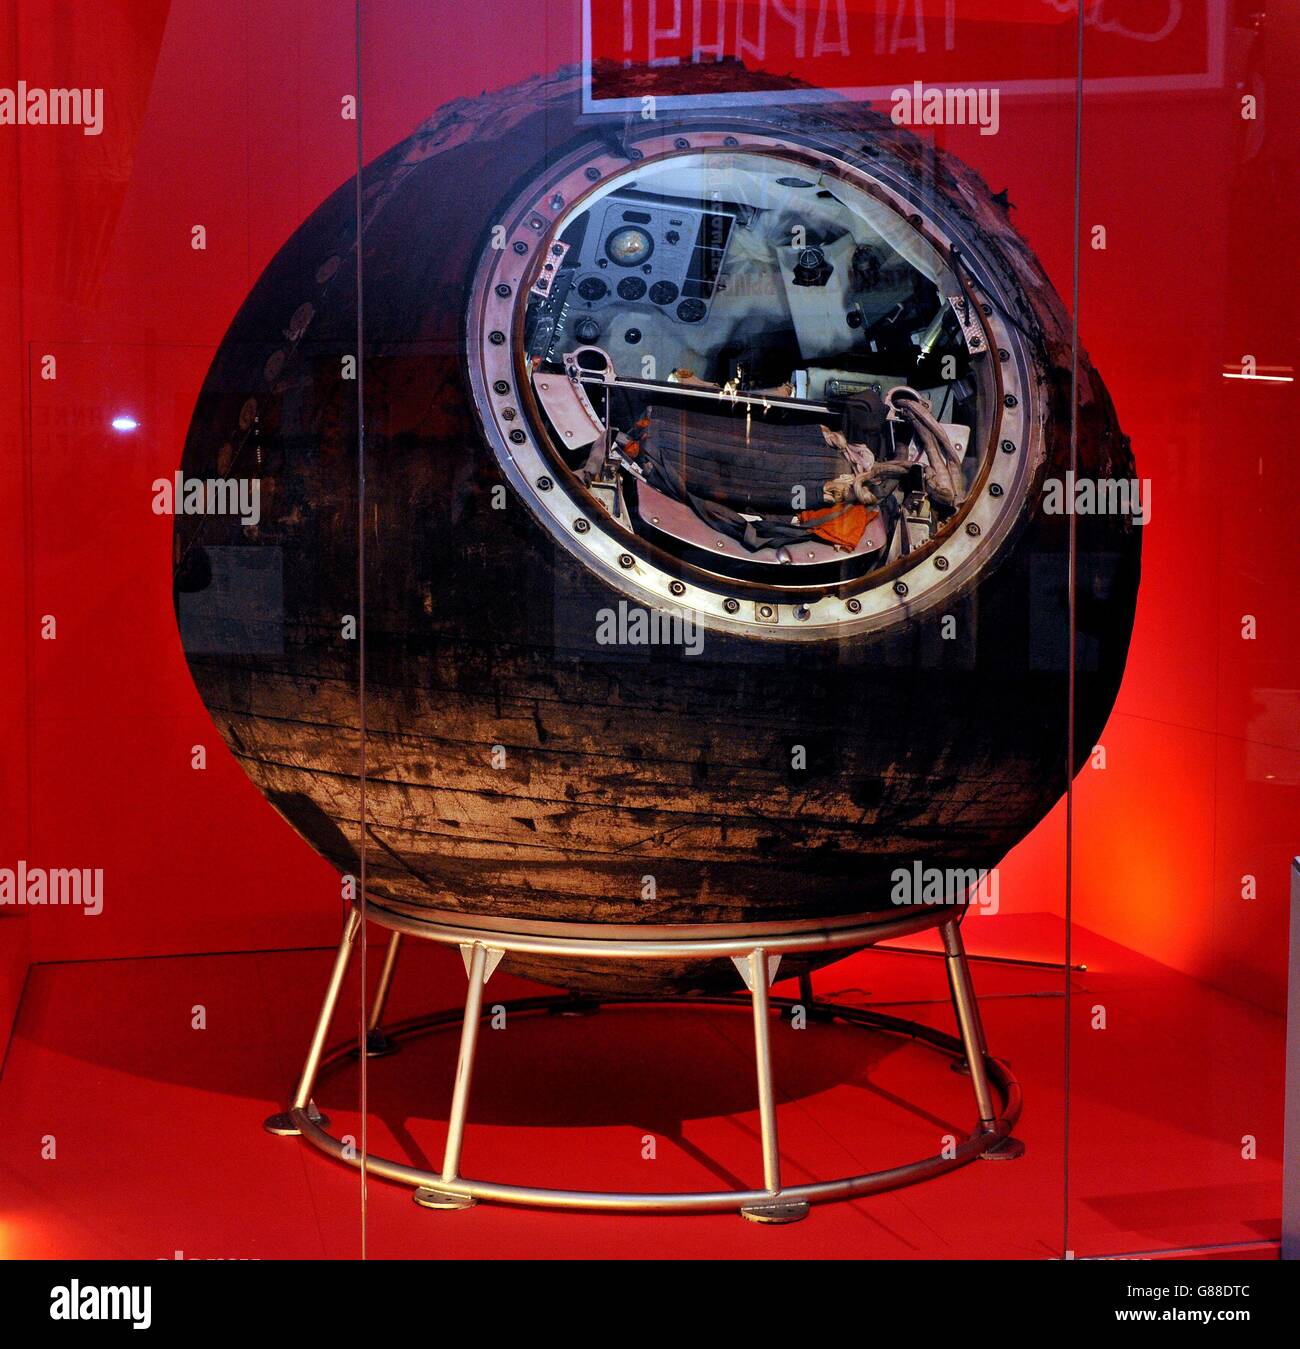 Vostok-6, la cápsula espacial que fue pilotada por Valentina Tereshkova, la primera mujer en el espacio, como parte del Museo de la Ciencia en la nueva exposición Cosmonauts de Londres: Nacimiento de la Era Espacial. Foto de stock